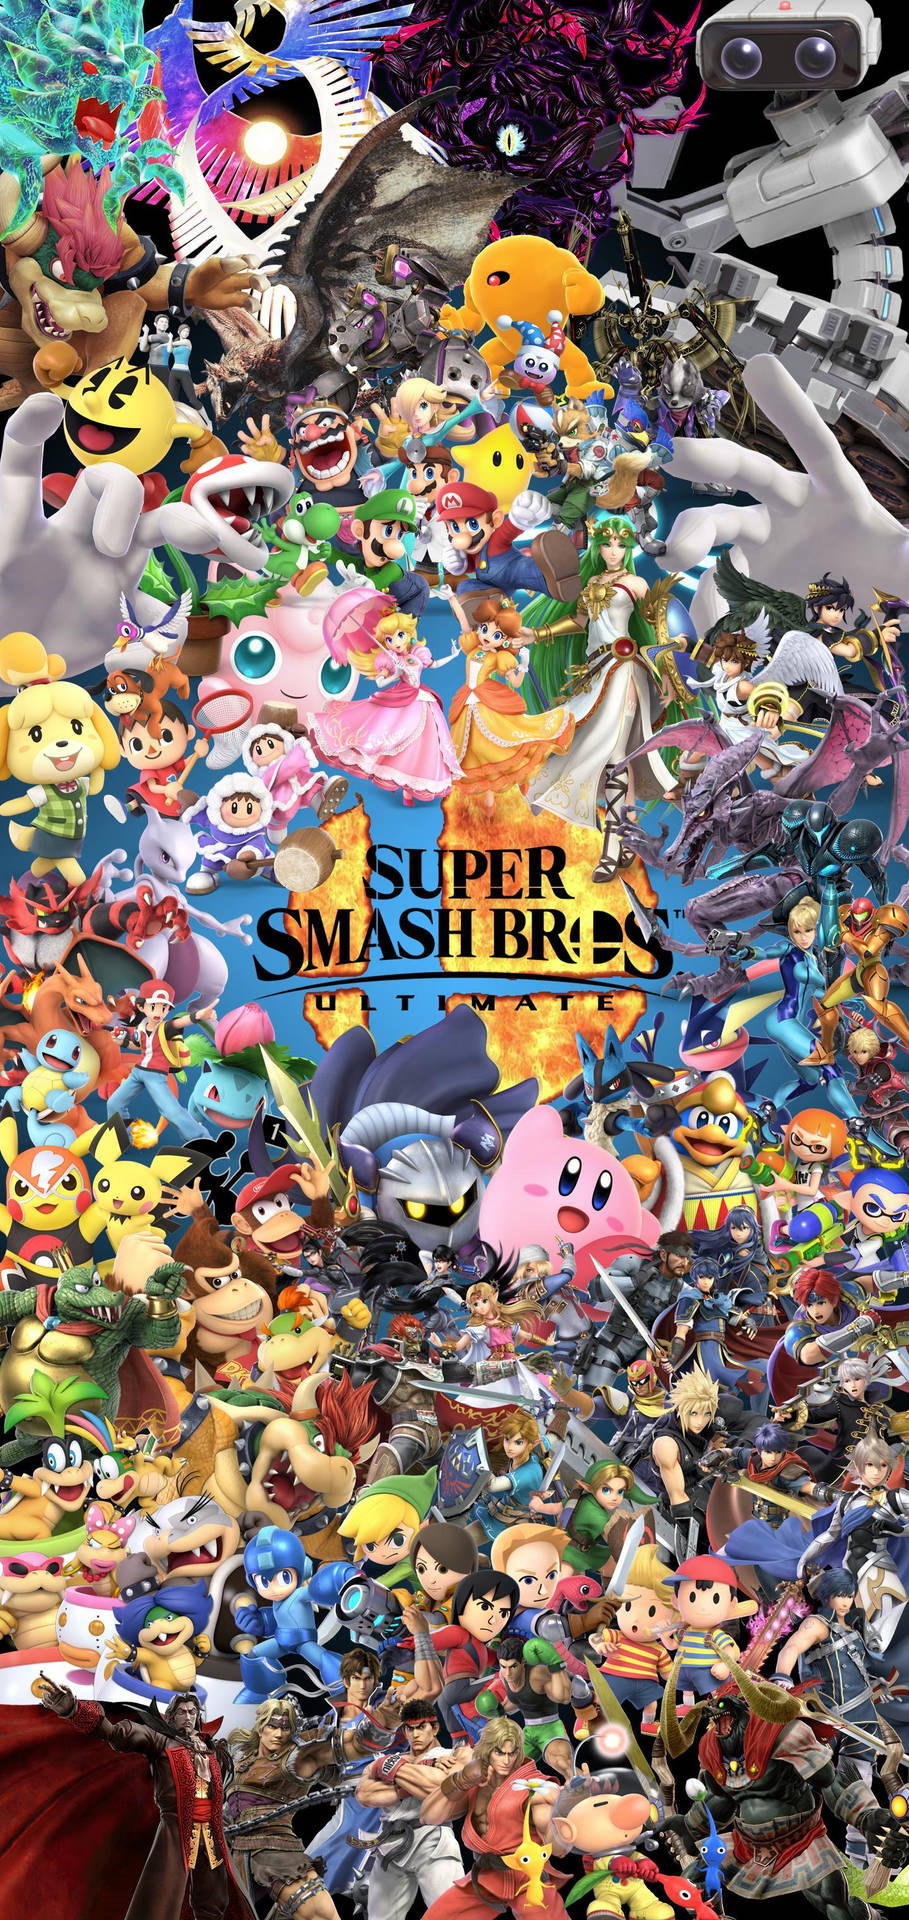 Plano De Fundo Do Super Smash Bros Ultimate